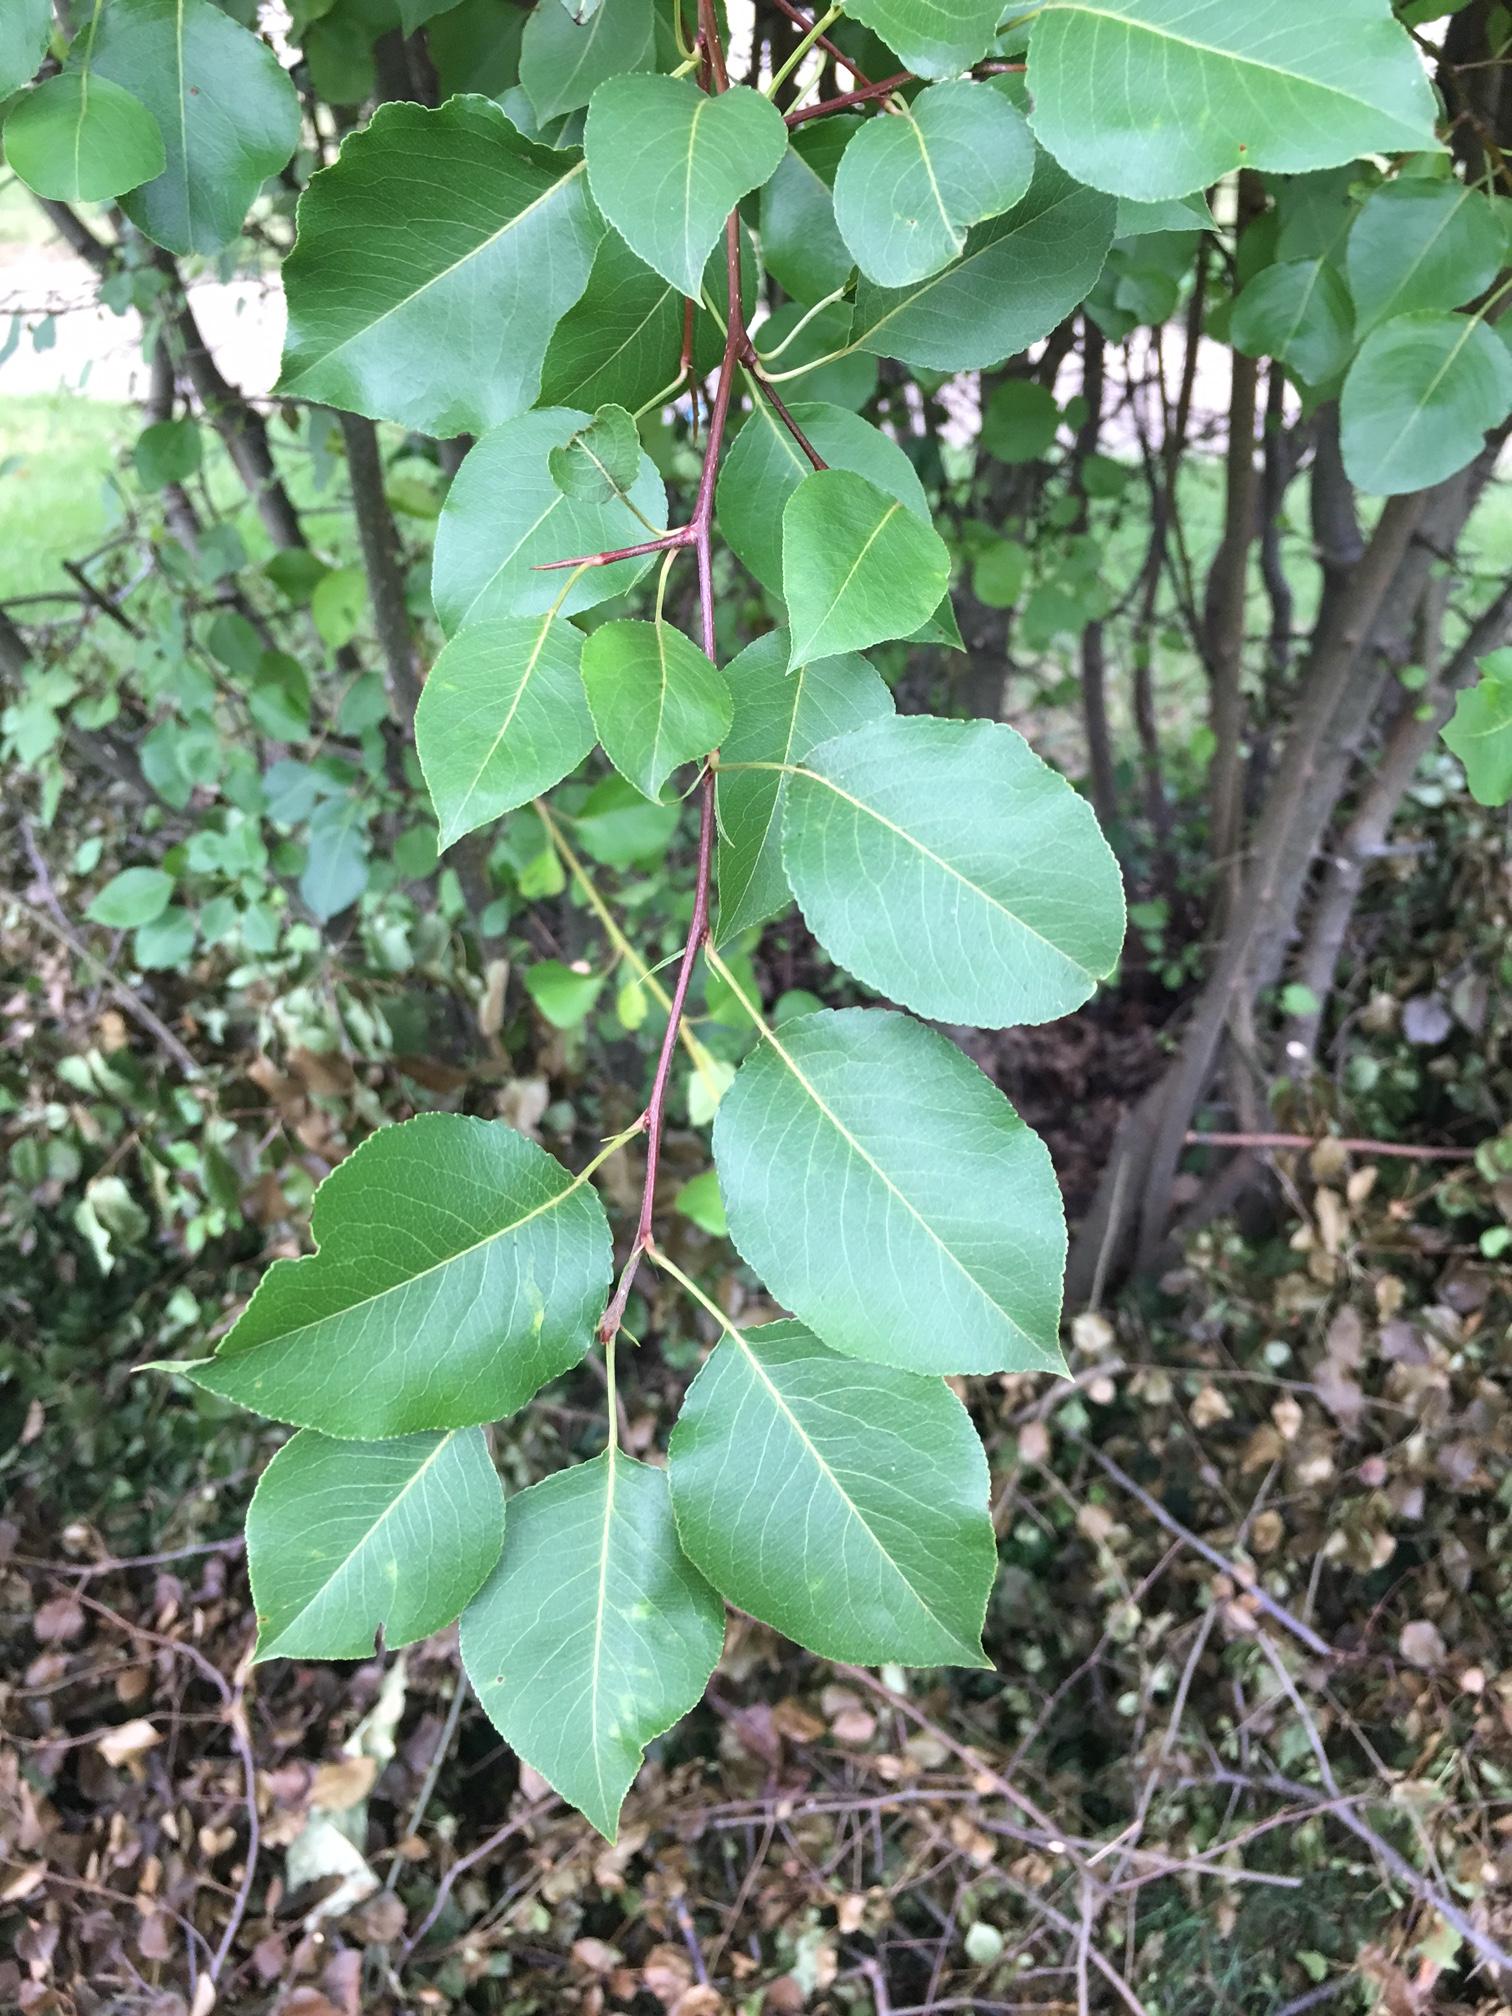 identification - Identify multi-stemmed thorny shrub with alternate ...